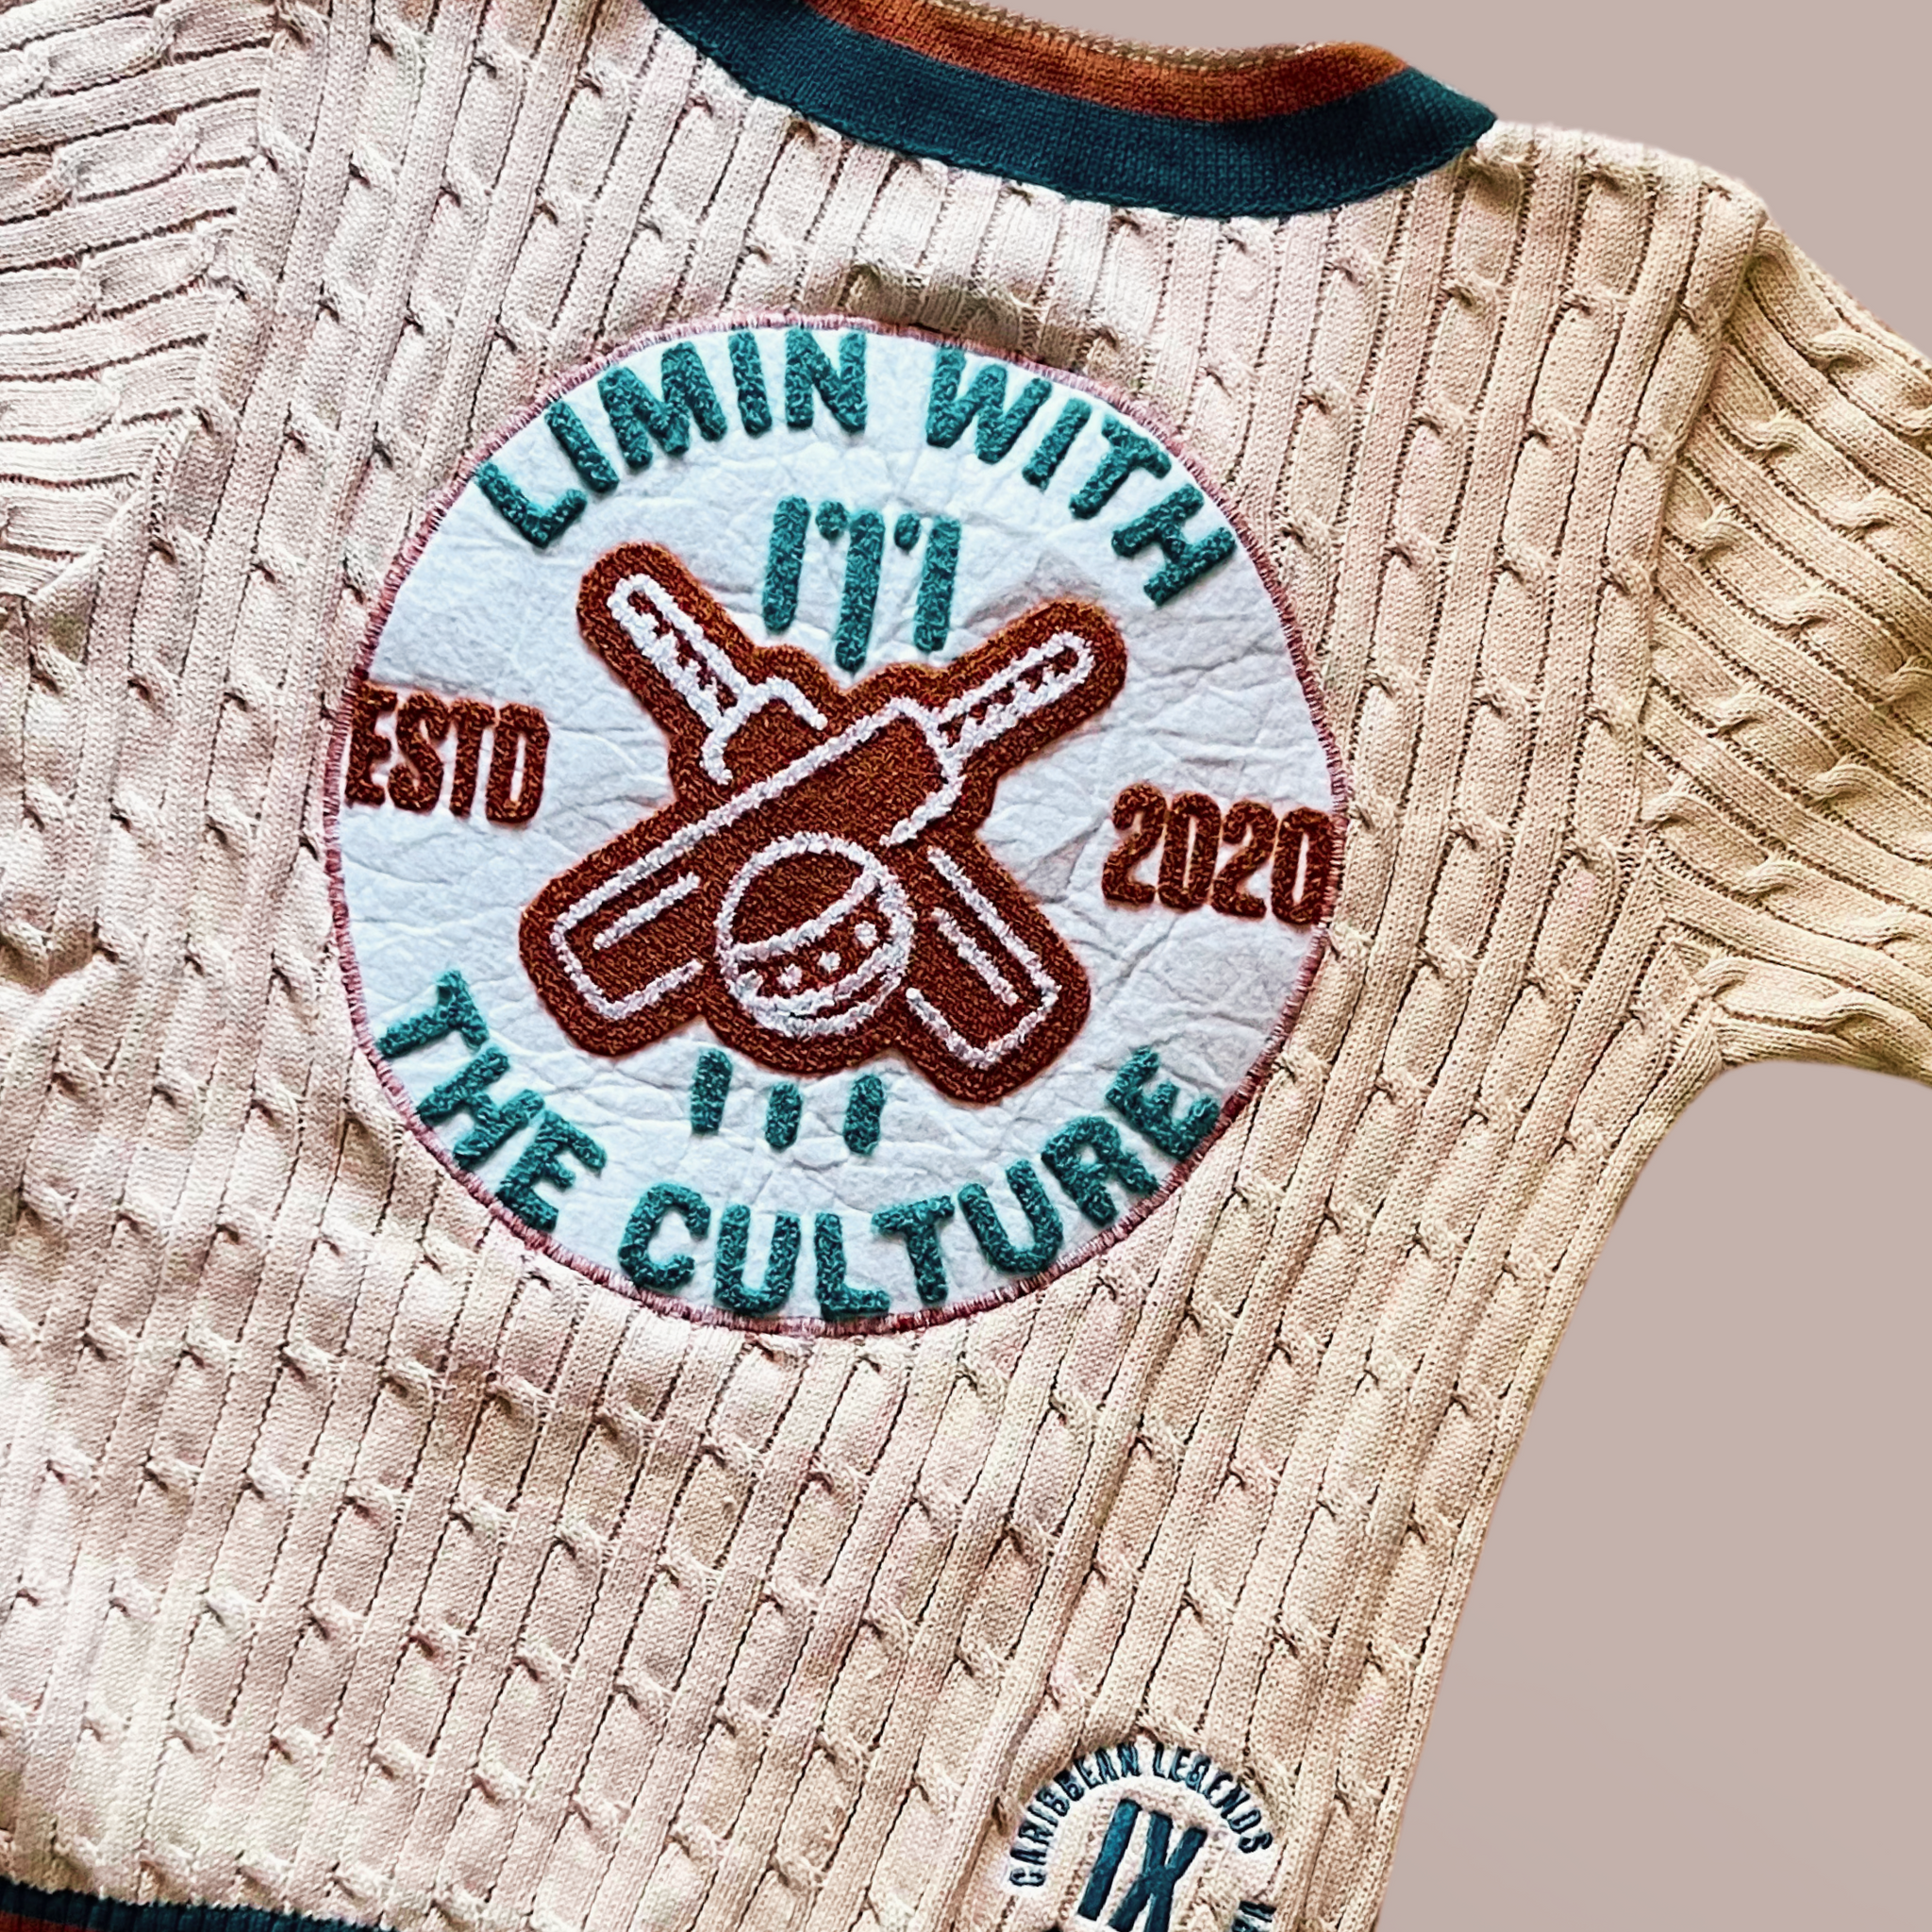 9 Legends - Vintage Culture Cricket Cable Knit Shirt